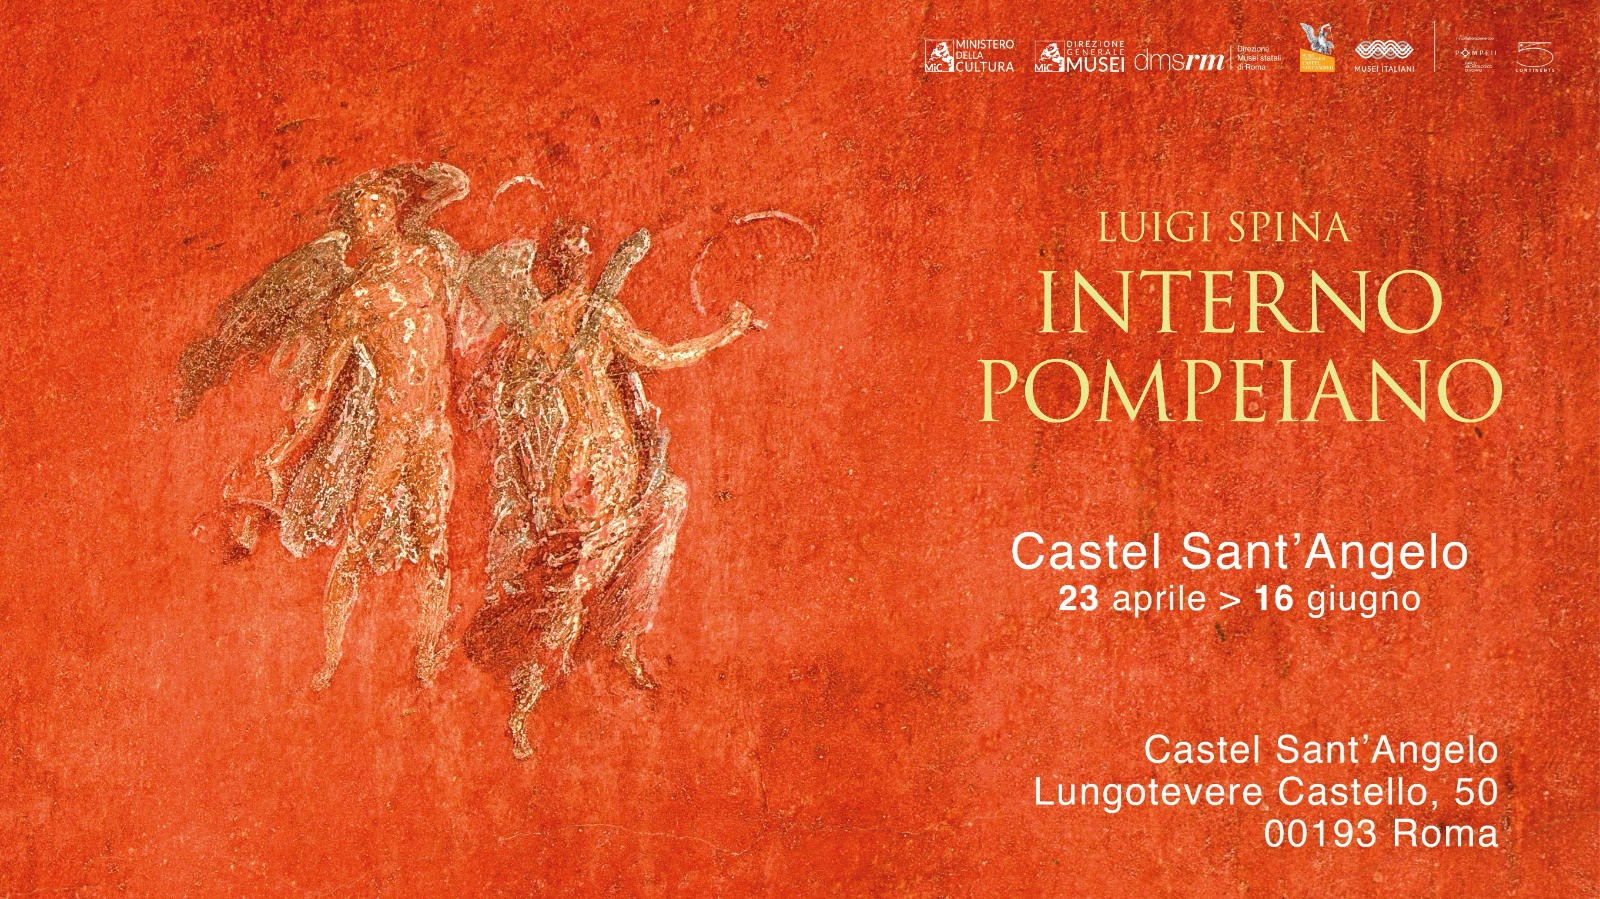 INTERNO POMPEIANO, la prima grande mostra dedicata al progetto fotografico di Luigi Spina a Roma, Castel Sant’Angelo